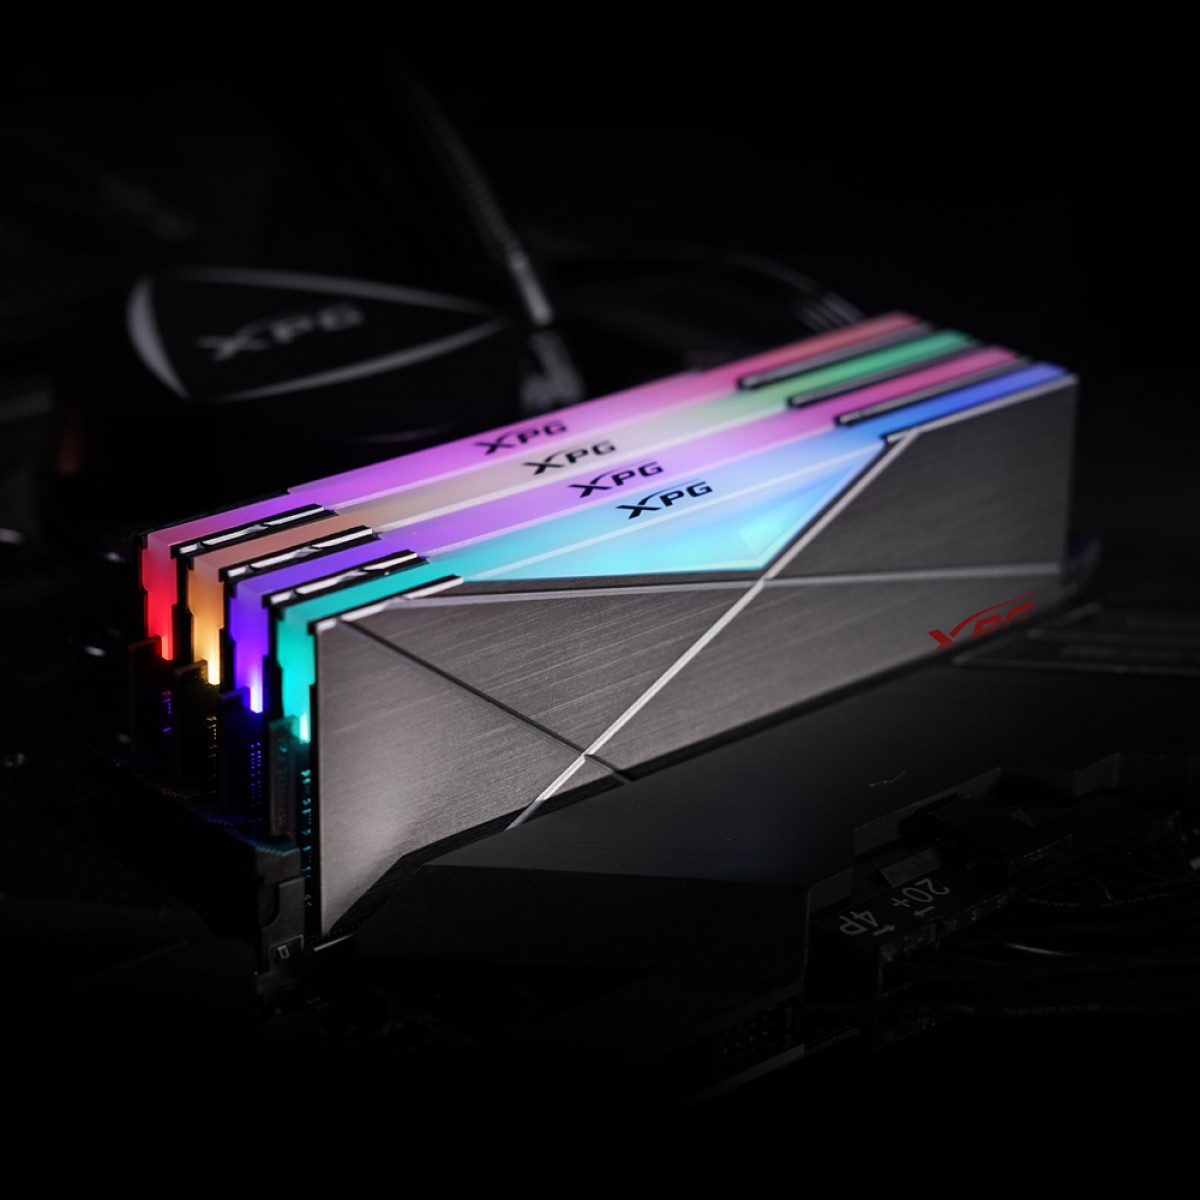 Memória DDR4 XPG Spectrix D50, 32GB (2x16GB), 3200Mhz, CL16, RGB, Gray, AX4U320016G16A-DT50